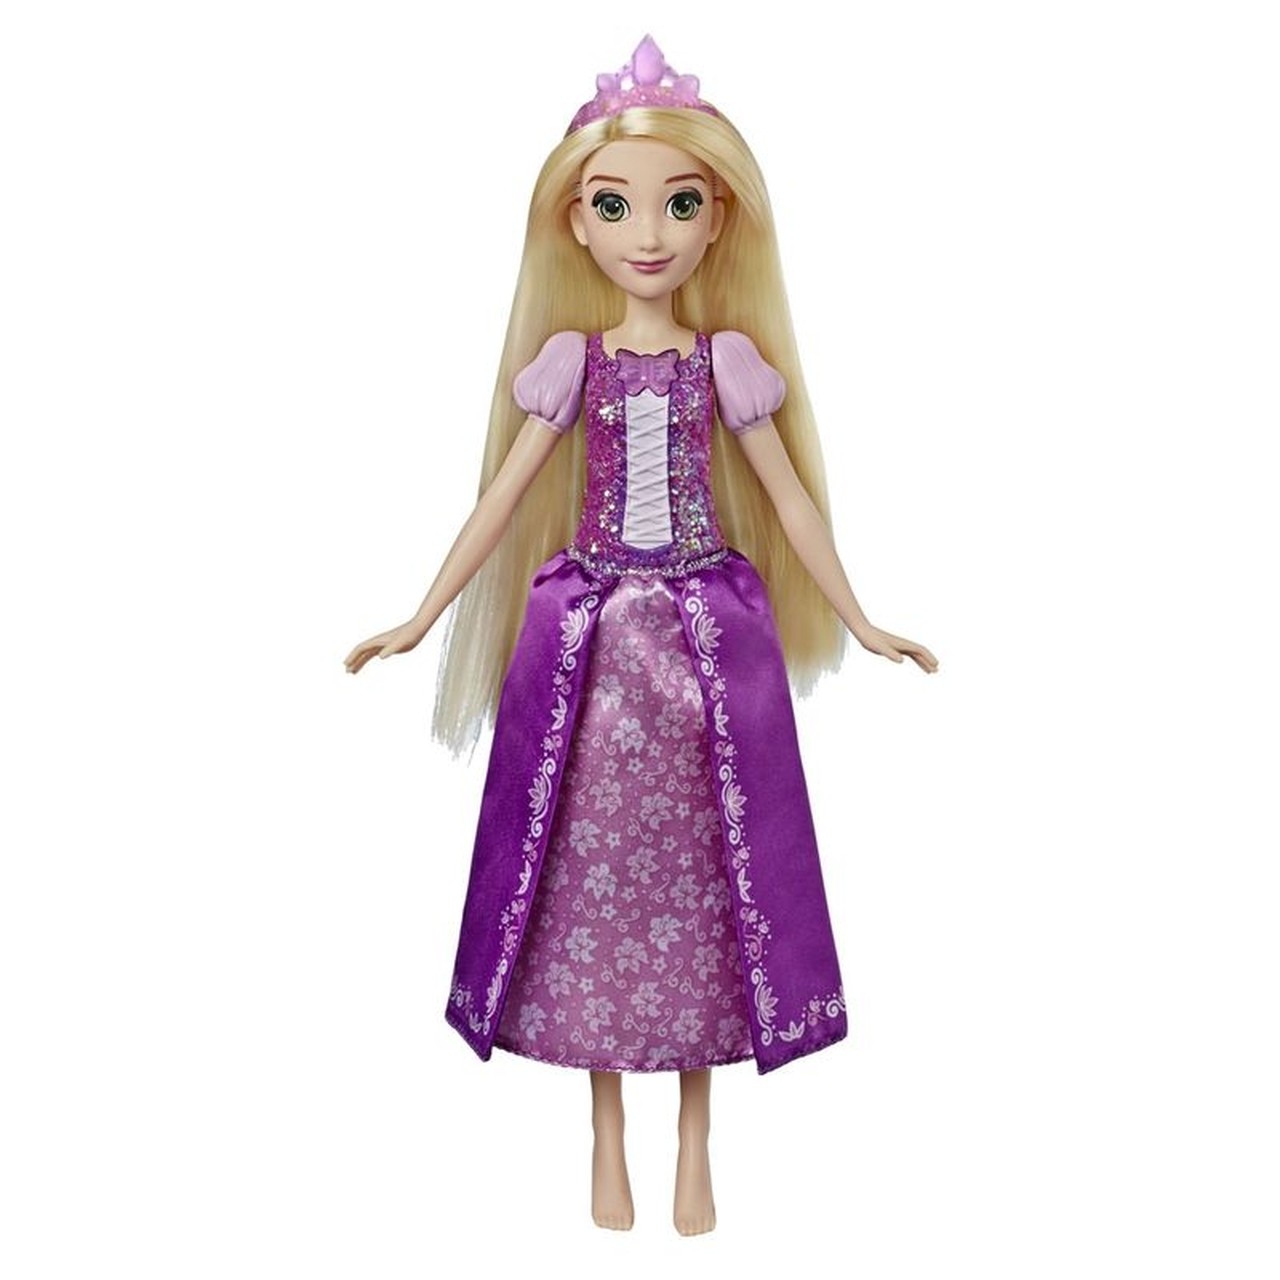 Boneca Princesas Disney Rapunzel Cantora - Hasbro E3046